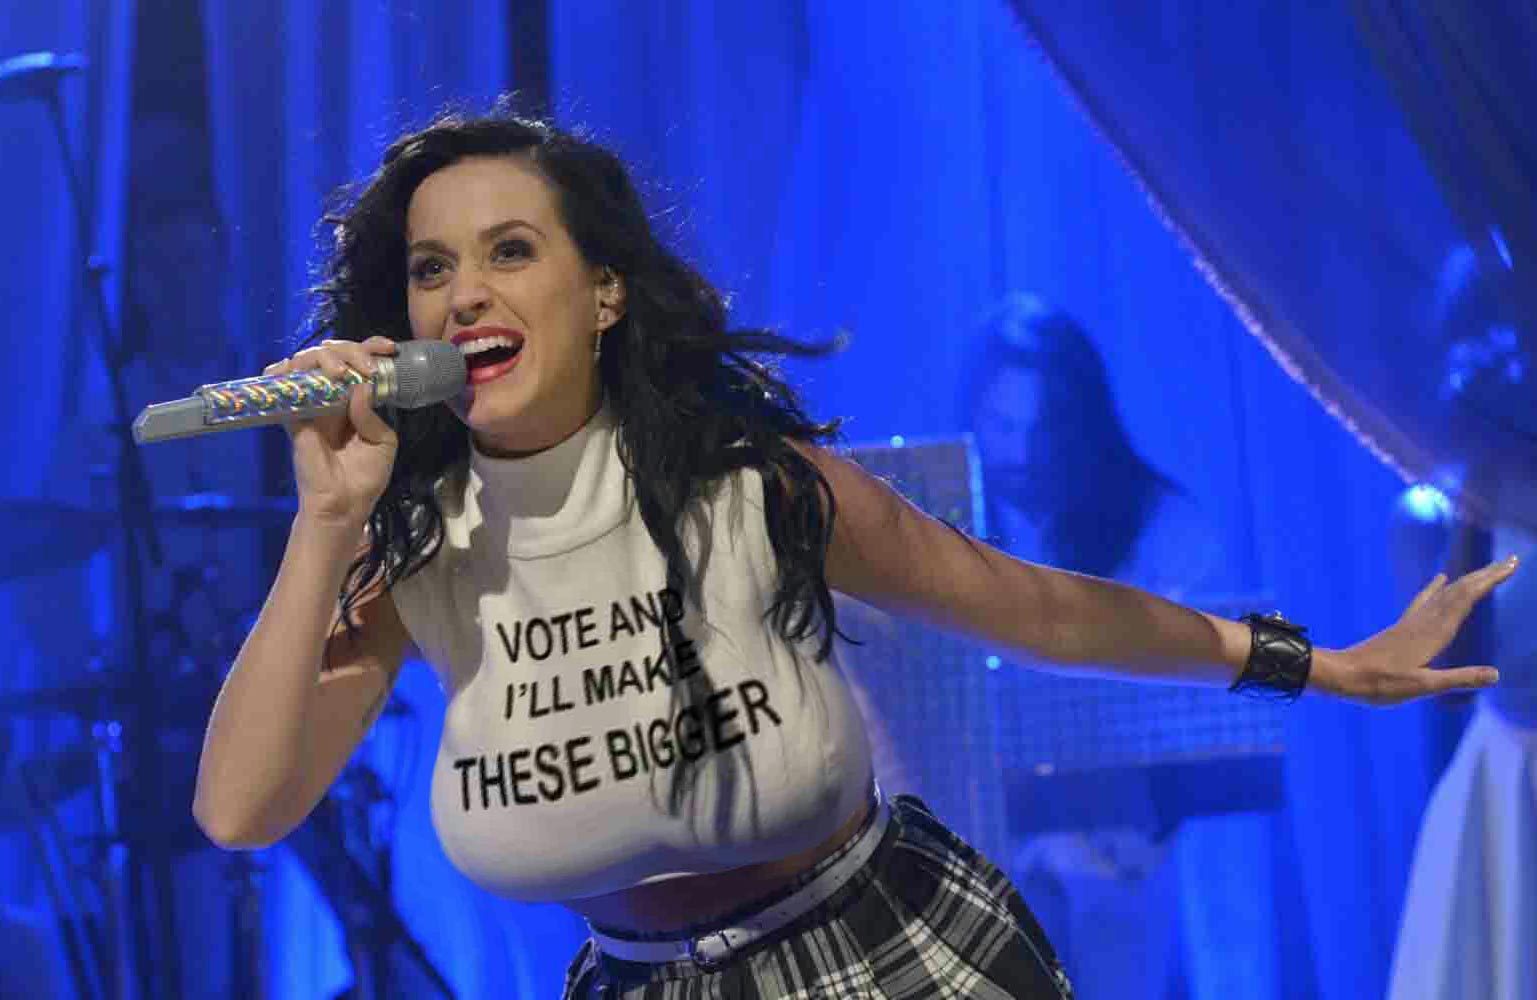 Katy Perry Huge Boobs Got Even Bigger Big Boobs Celebrities 